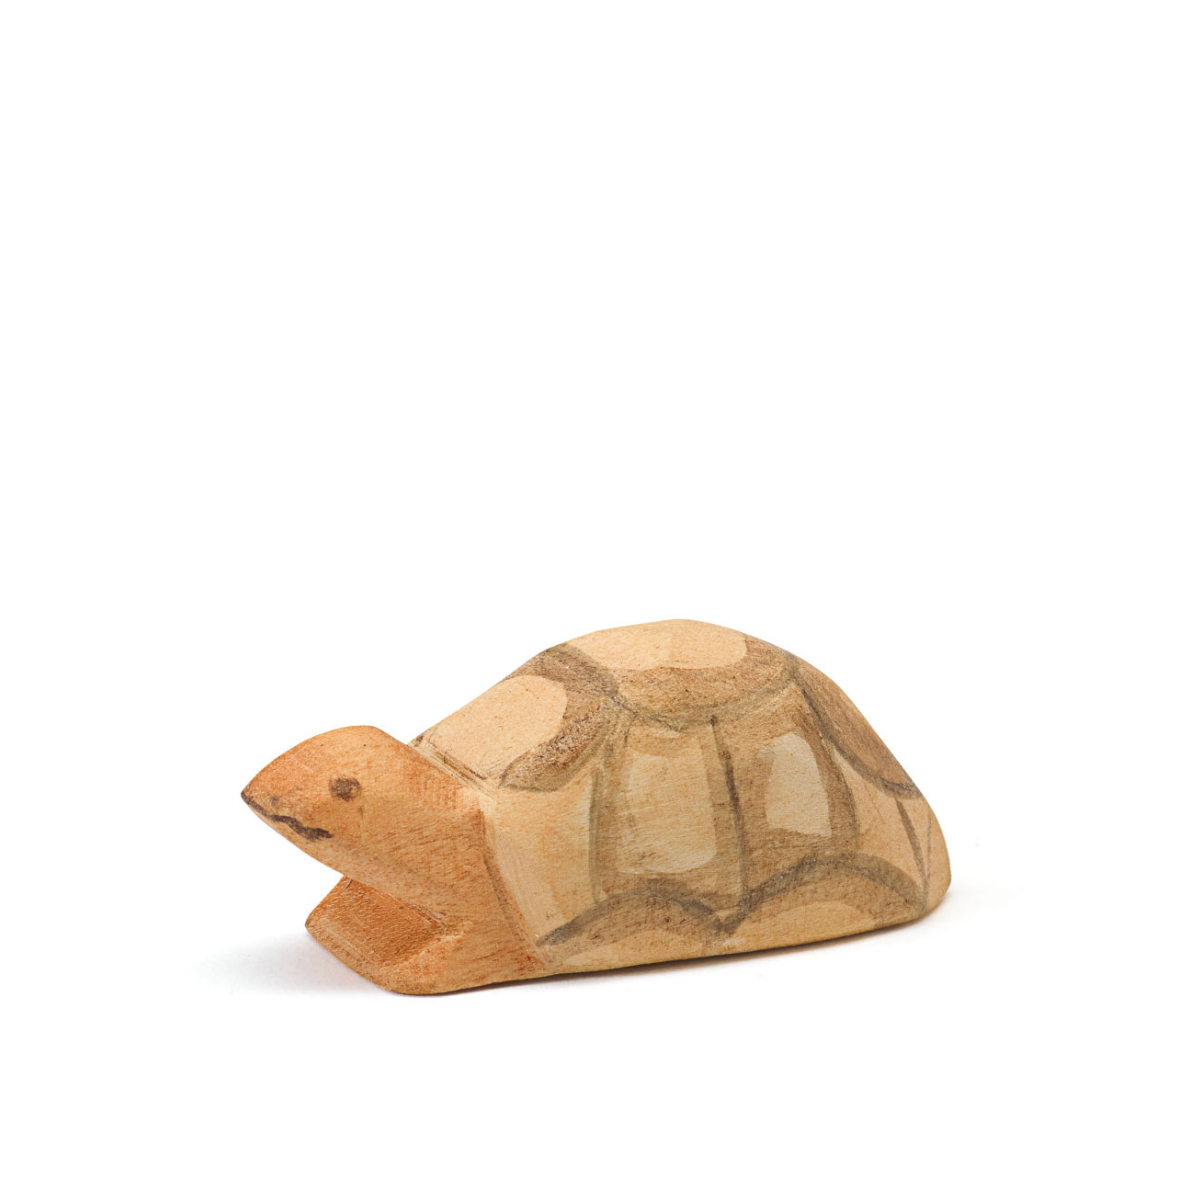 Schildkröte klein, Ostheimer 20832